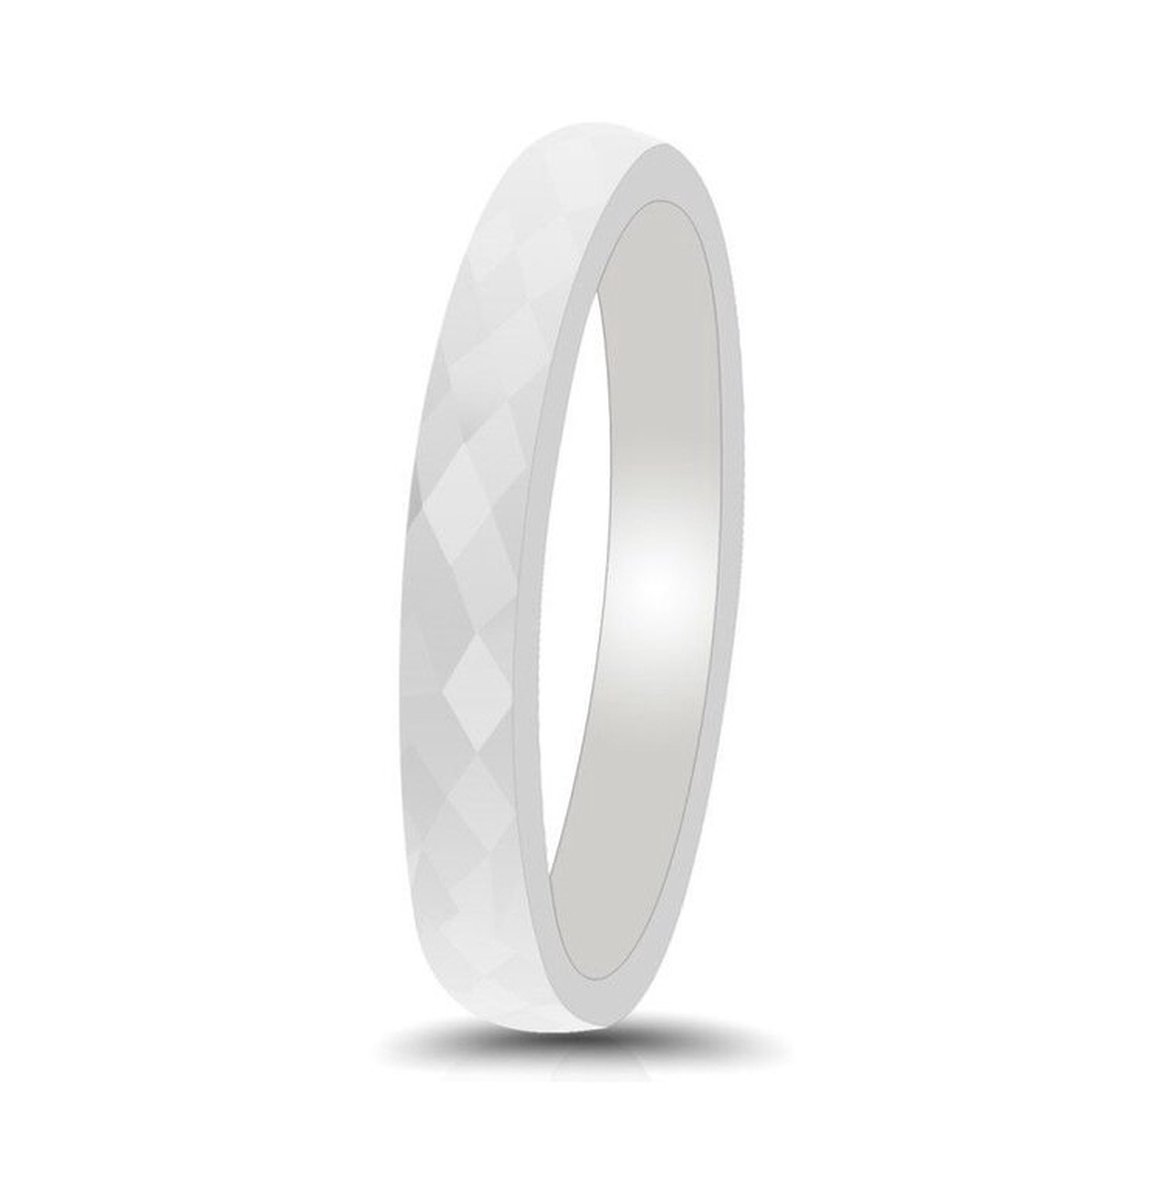 Witte ring keramisch - Hamerslag glanzende structuur Mauro Vinci Unisex ringen - met geschenkverpakking - maat 10